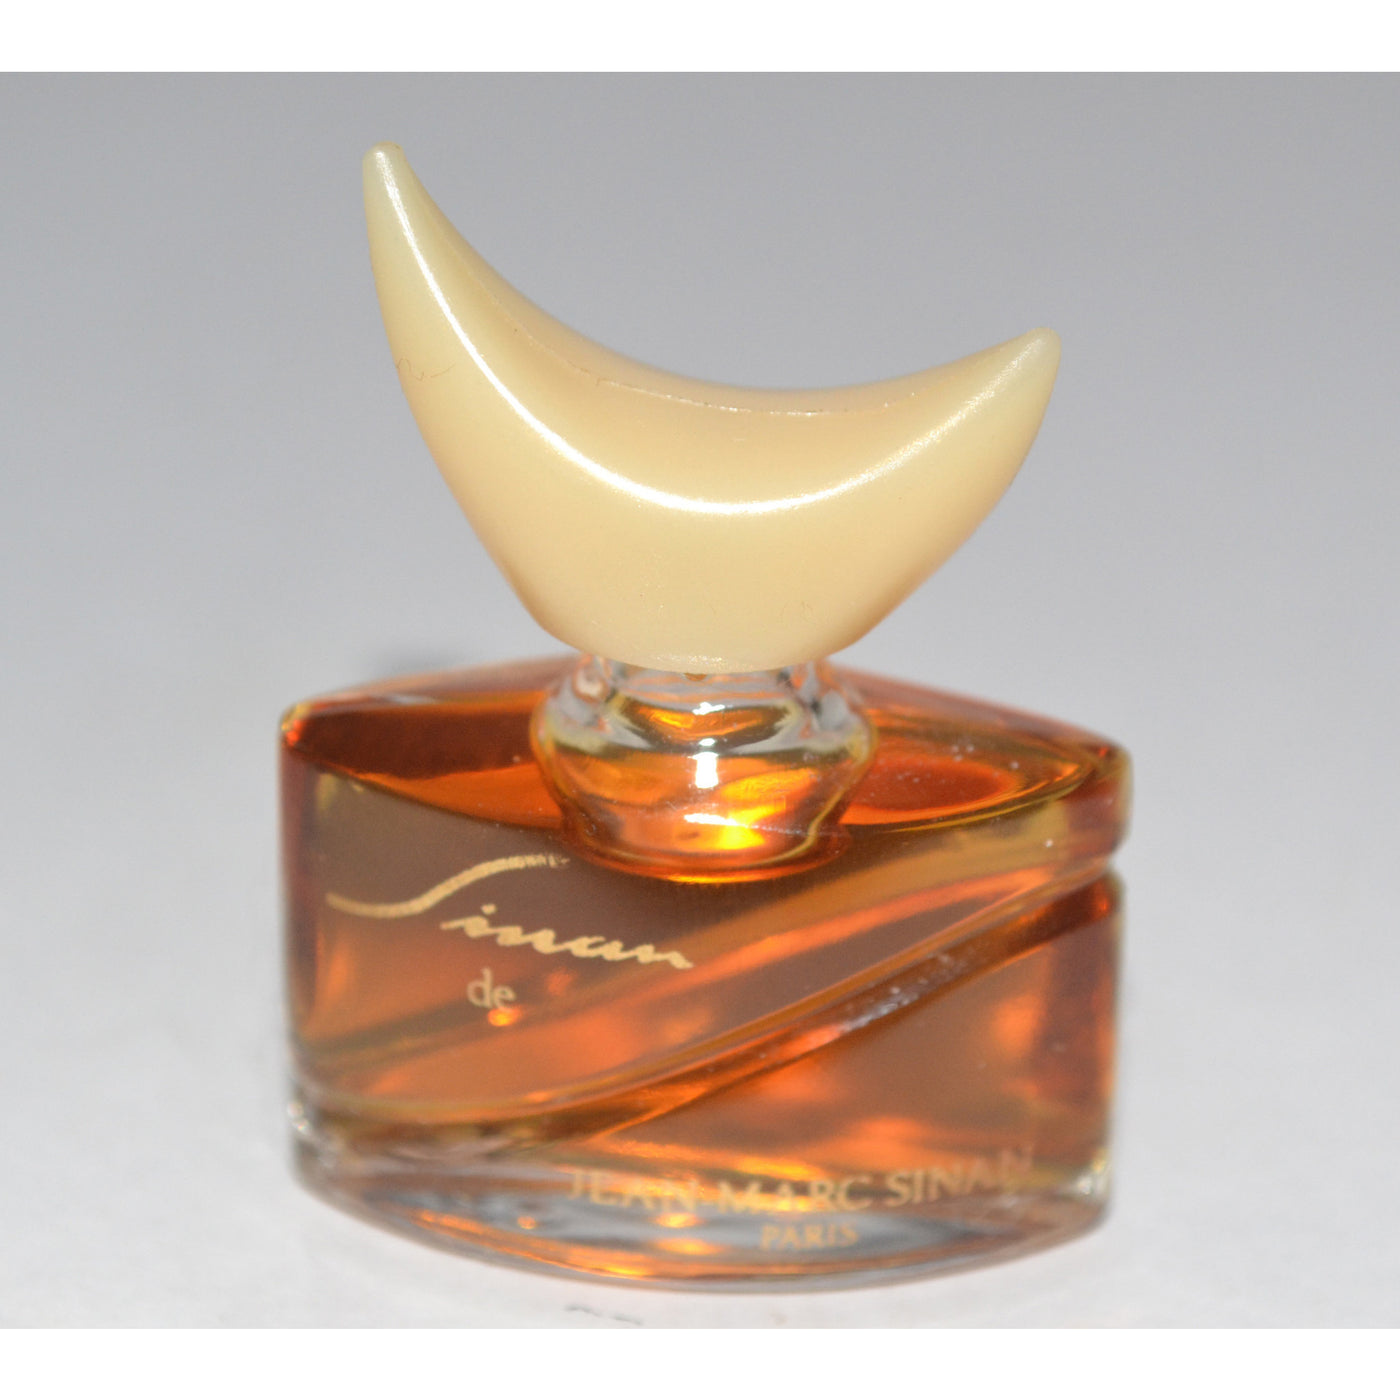 Vintage Sinan Perfume Mini By Jean Marc Sinan